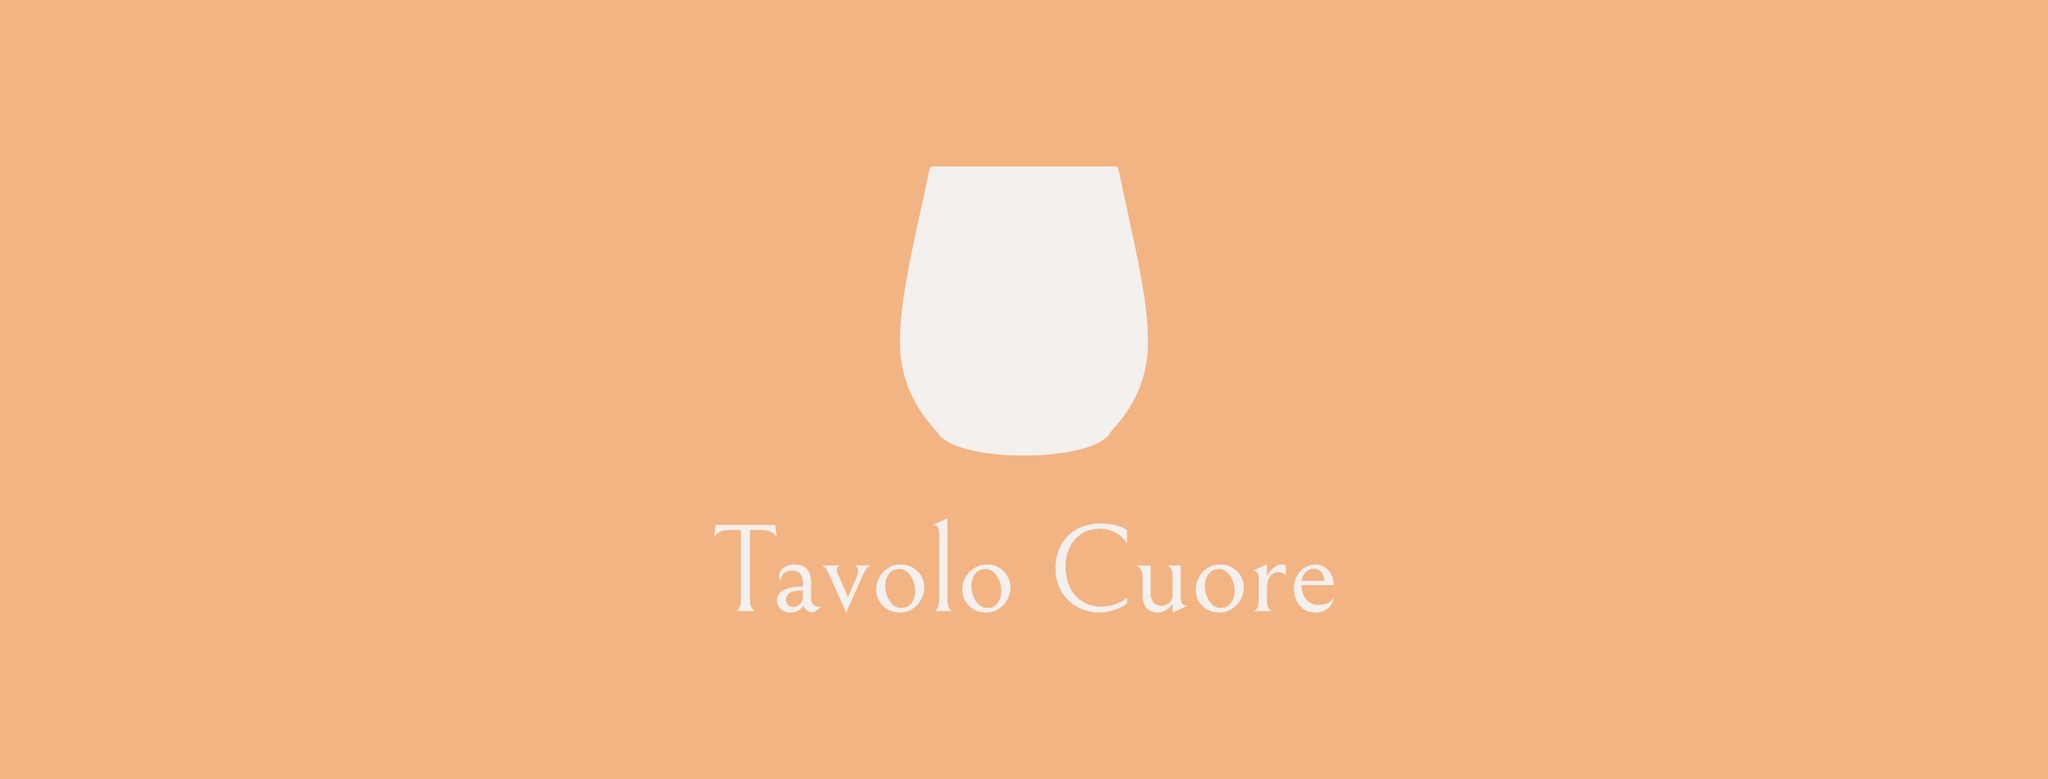 Tavolo Cuore